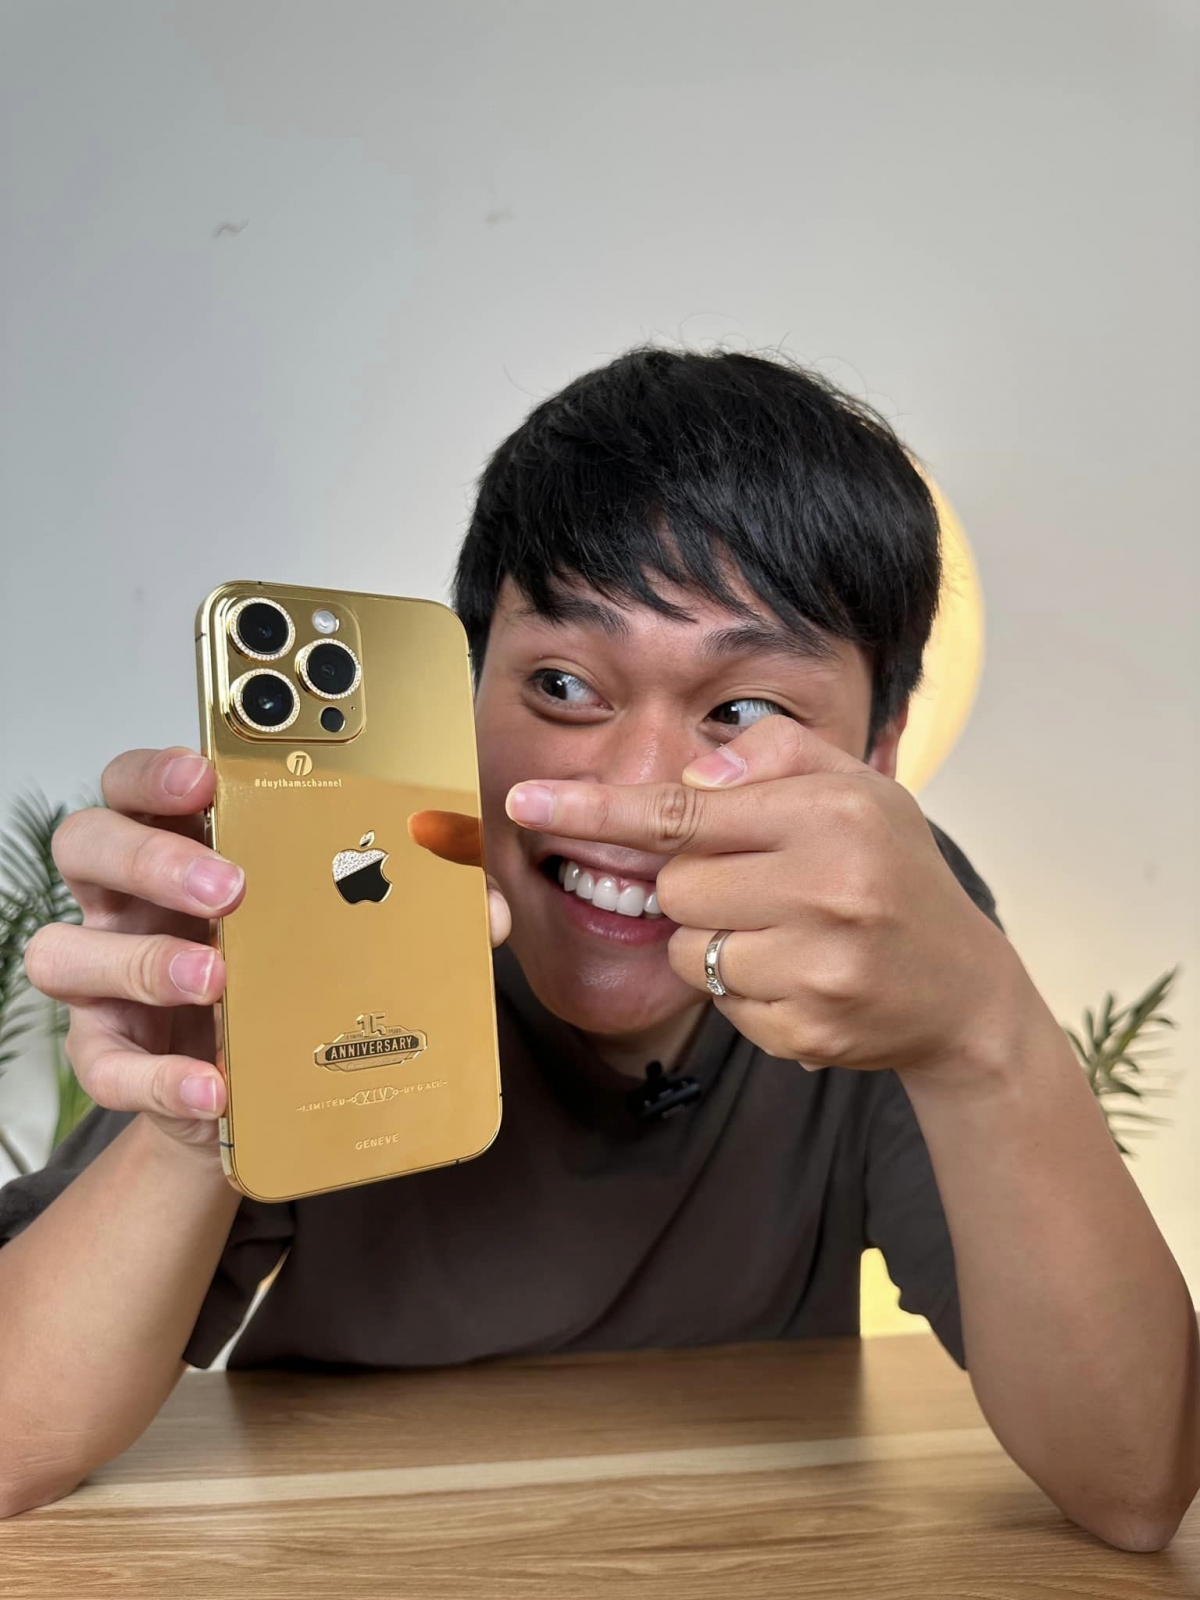 Chiếc iPhone 14 Pro Max mạ vàng sáng bóng đã chính thức ra mắt với viền và lưng máy được phủ lớp vàng sang trọng, tôn lên vẻ đẹp hoàn hảo của sản phẩm. Bạn sẽ không thể rời mắt khỏi chiếc điện thoại này khi mỏi mắt với thiết kế vô cùng đắt giá này.